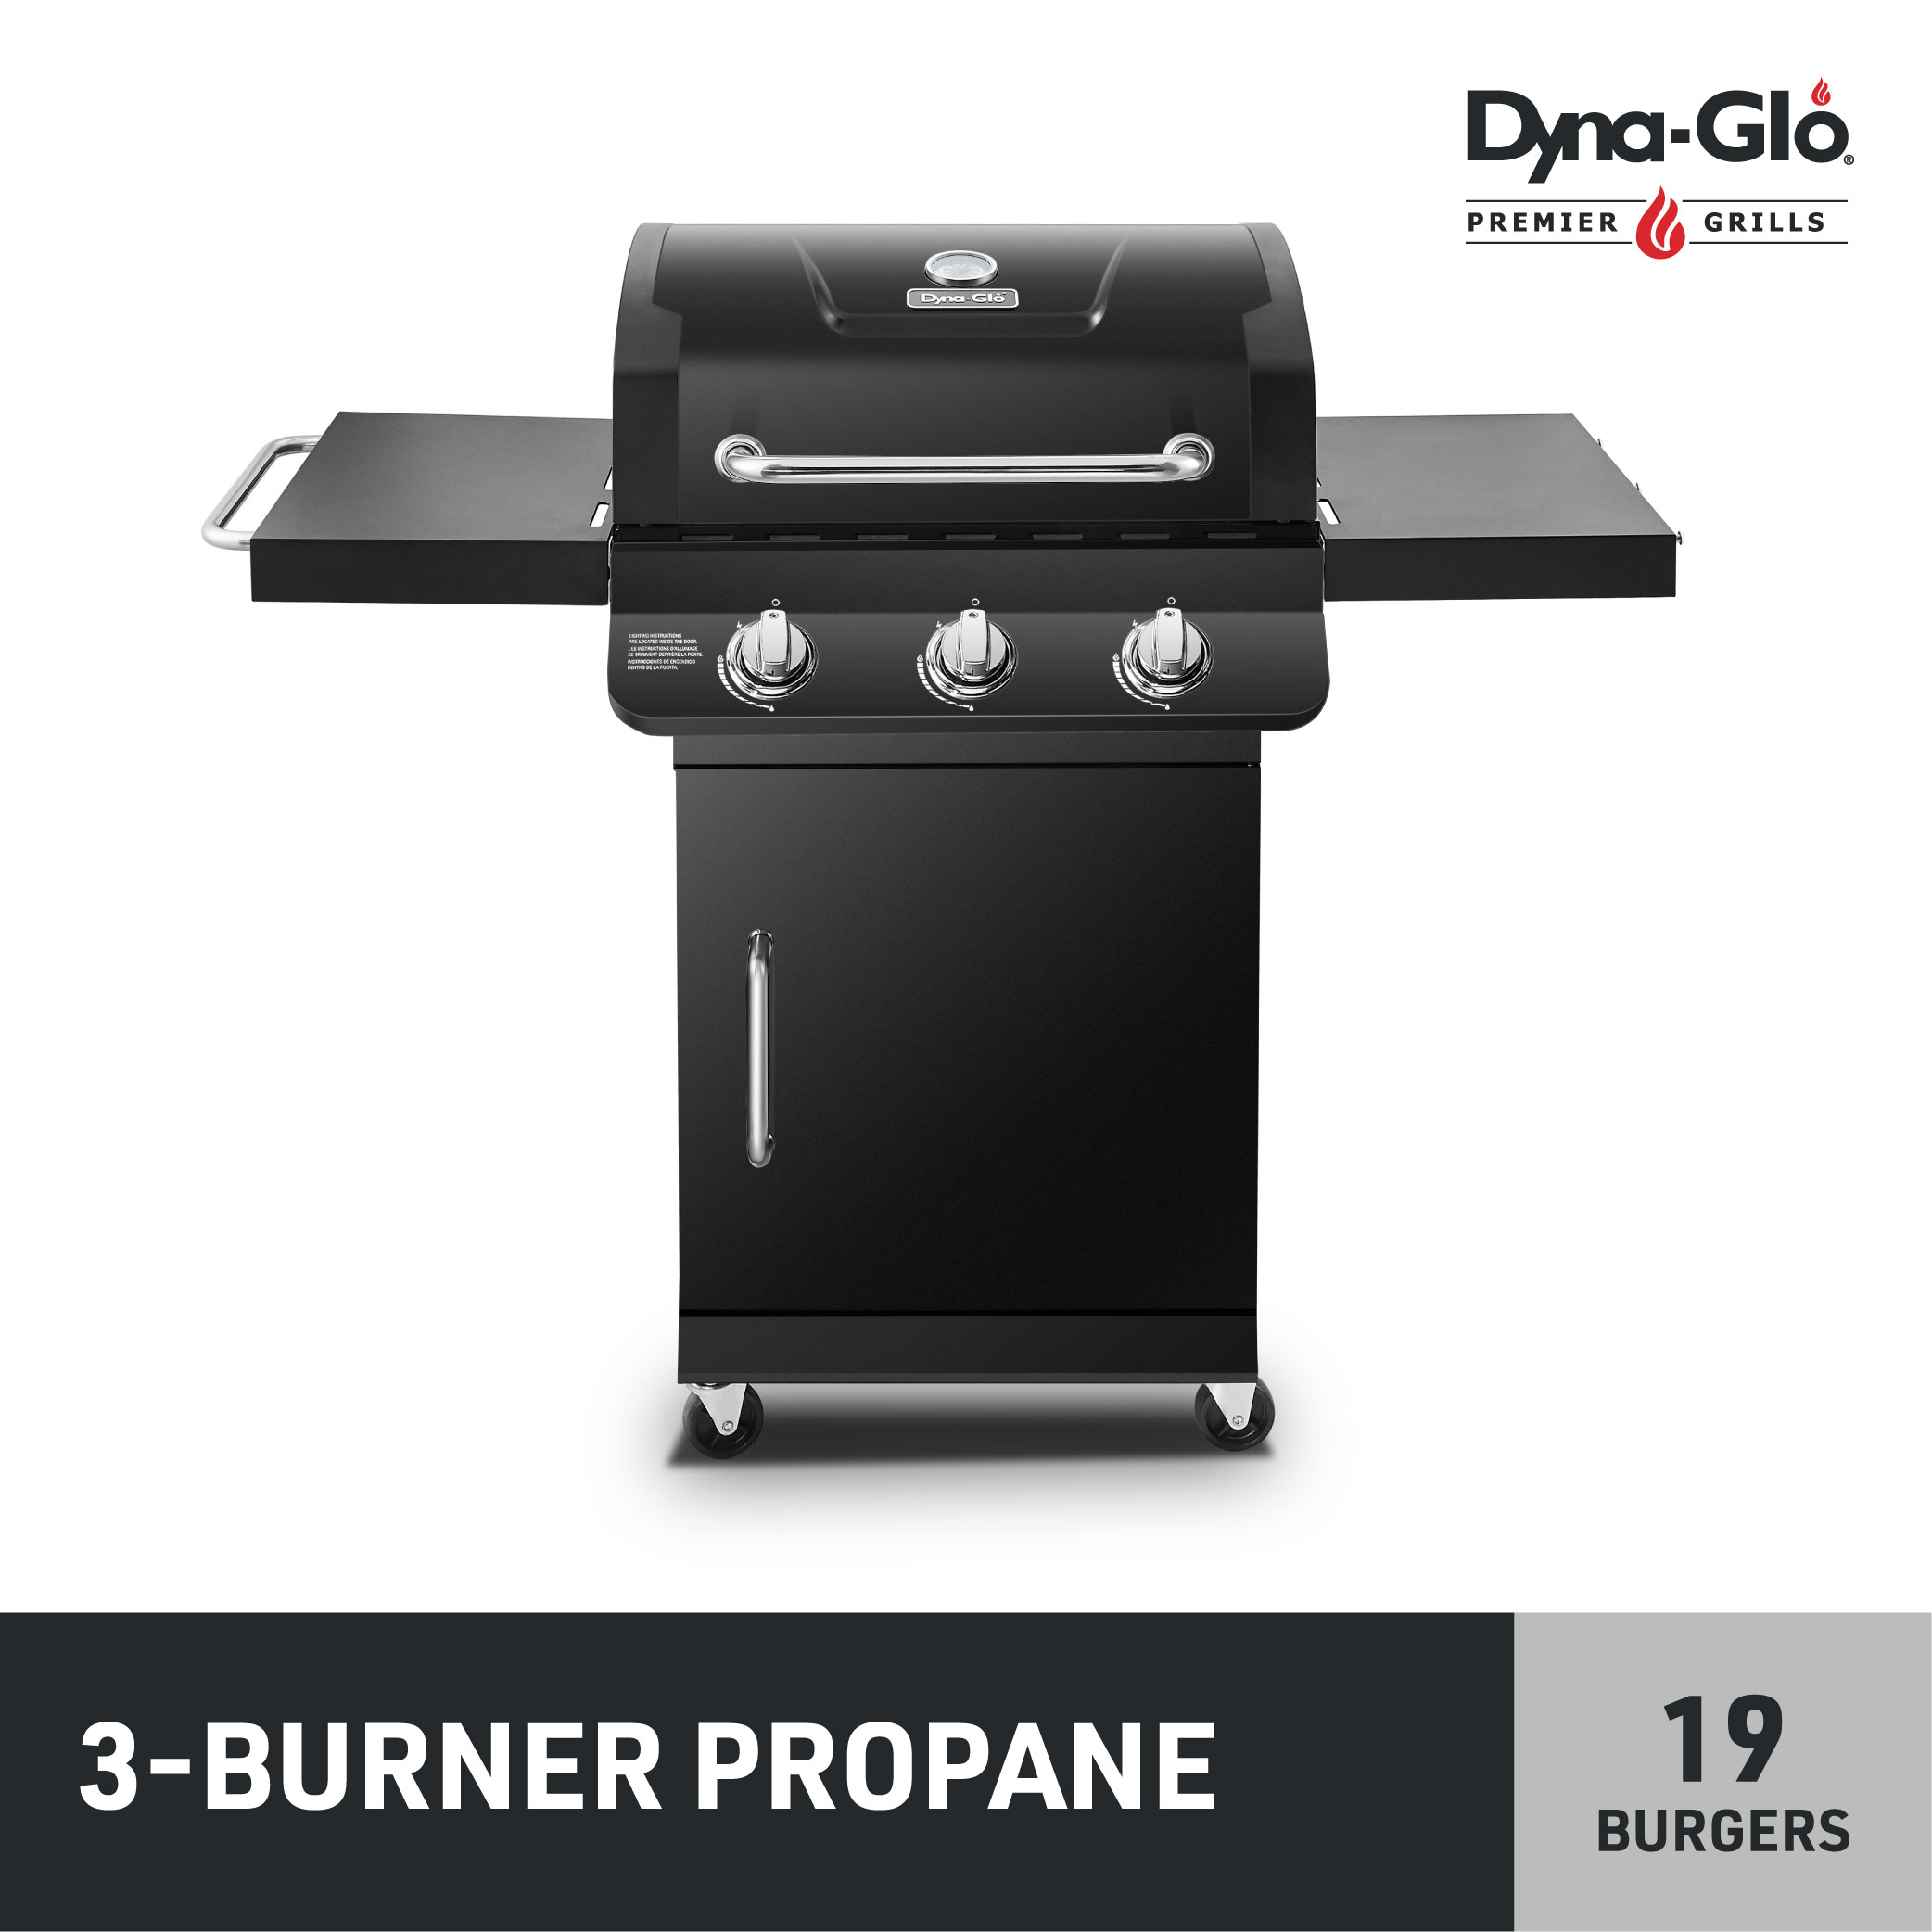 Dyna-Glo DGP397CNP-D Premier 3 Burner Propane Gas Black BBQ Grill - image 1 of 9